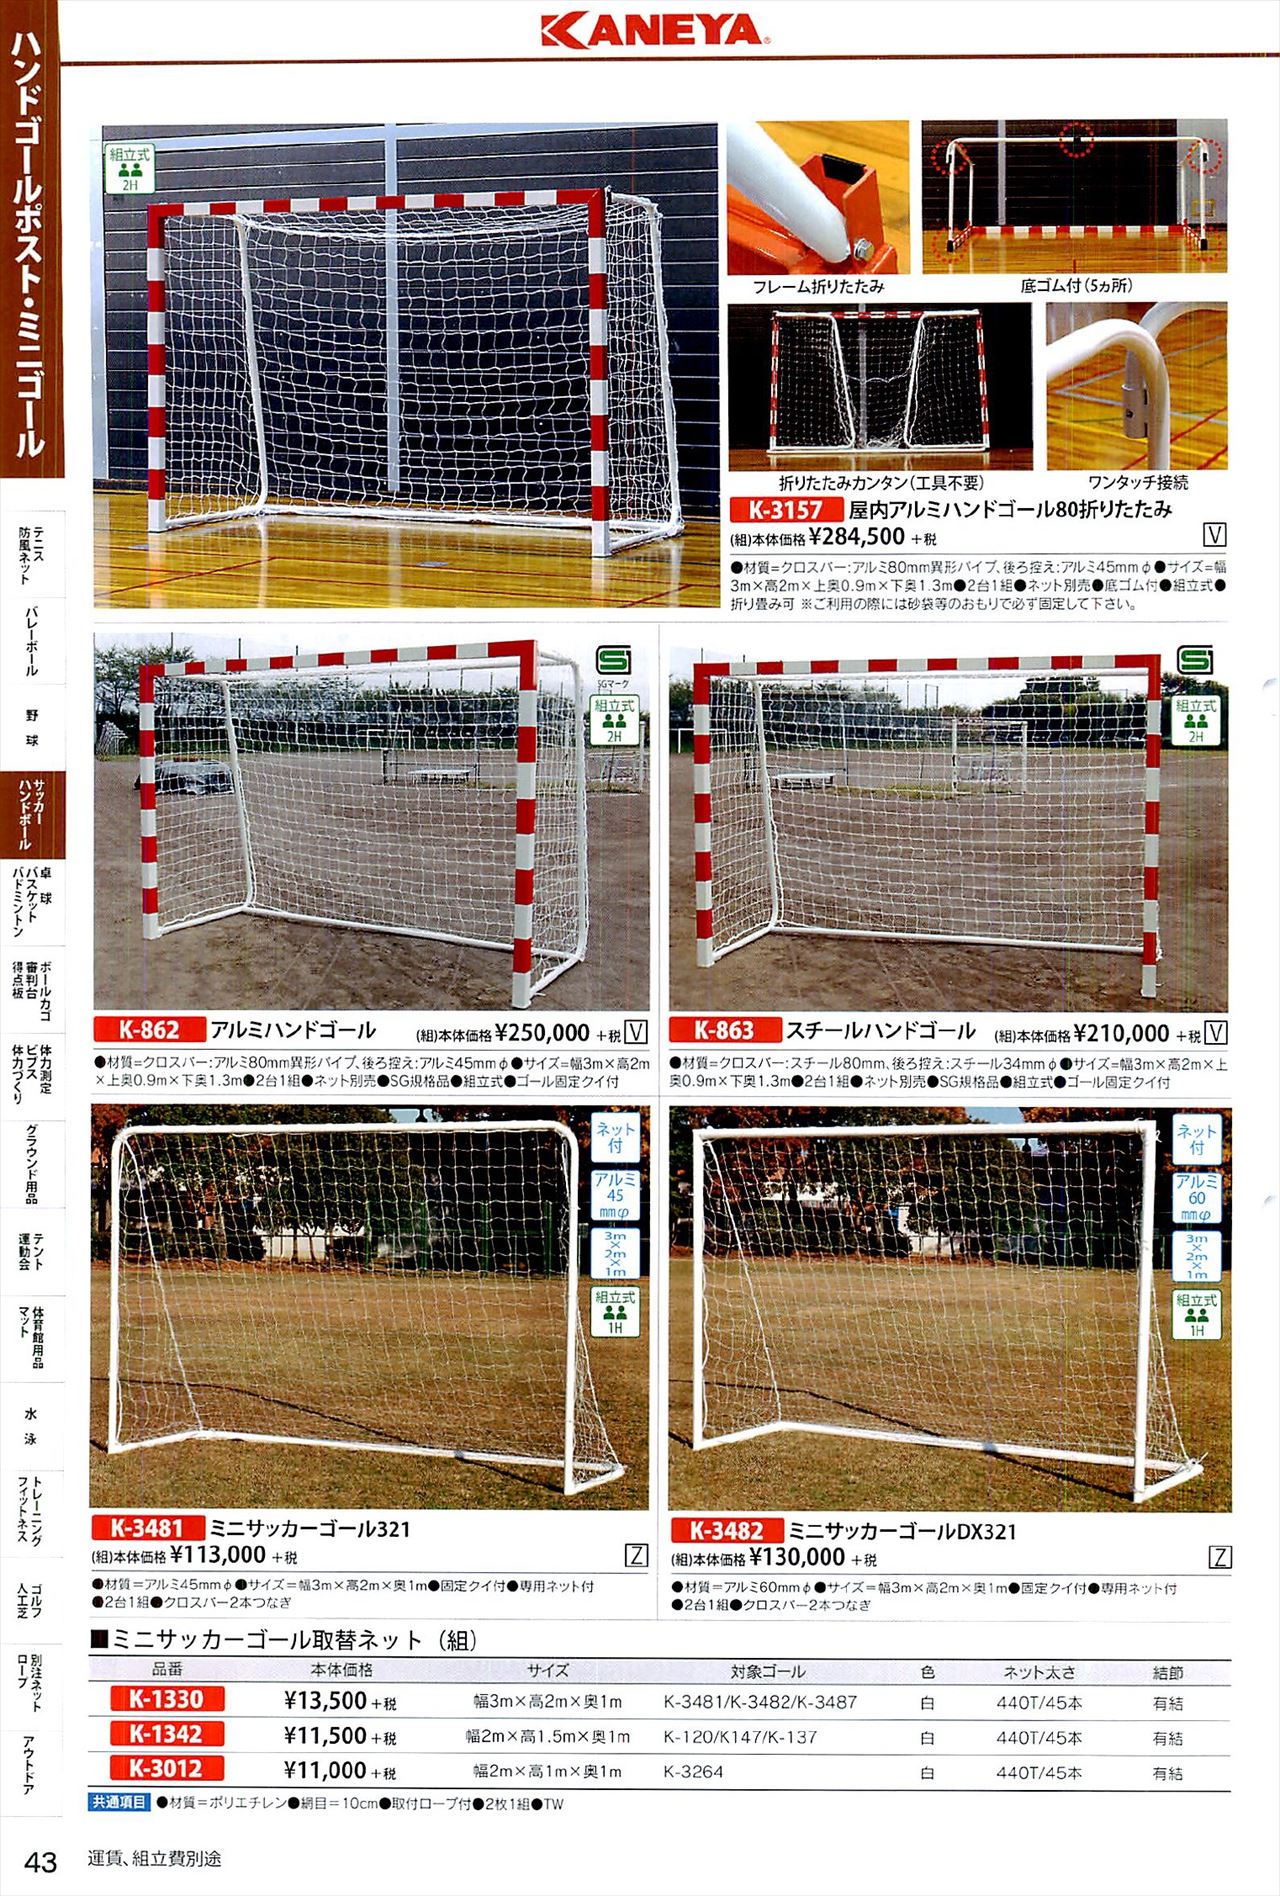 ミニサッカーゴールポストは 鐘屋産業カタログ の ページ43 に掲載されています スポーツメーカーカタログ 目次ページ